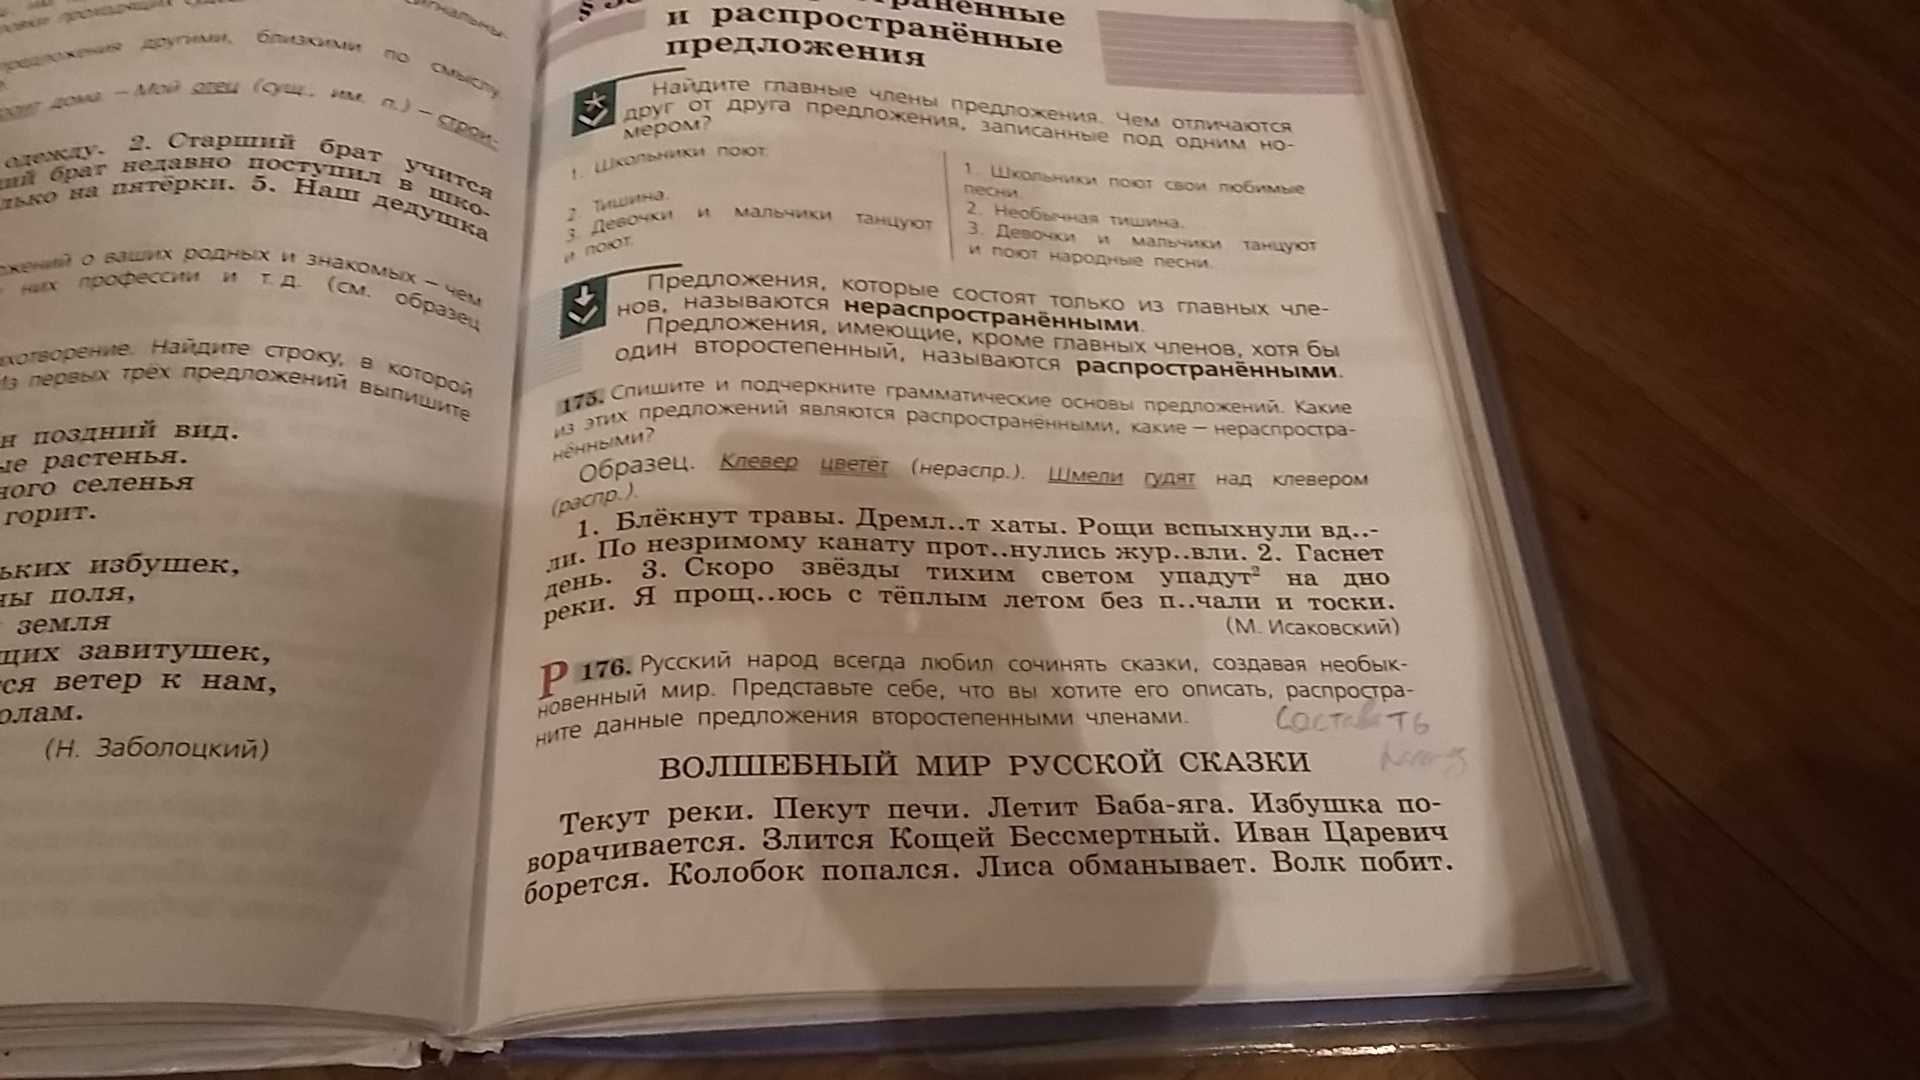 Русский язык 4 класс 2 упр 176